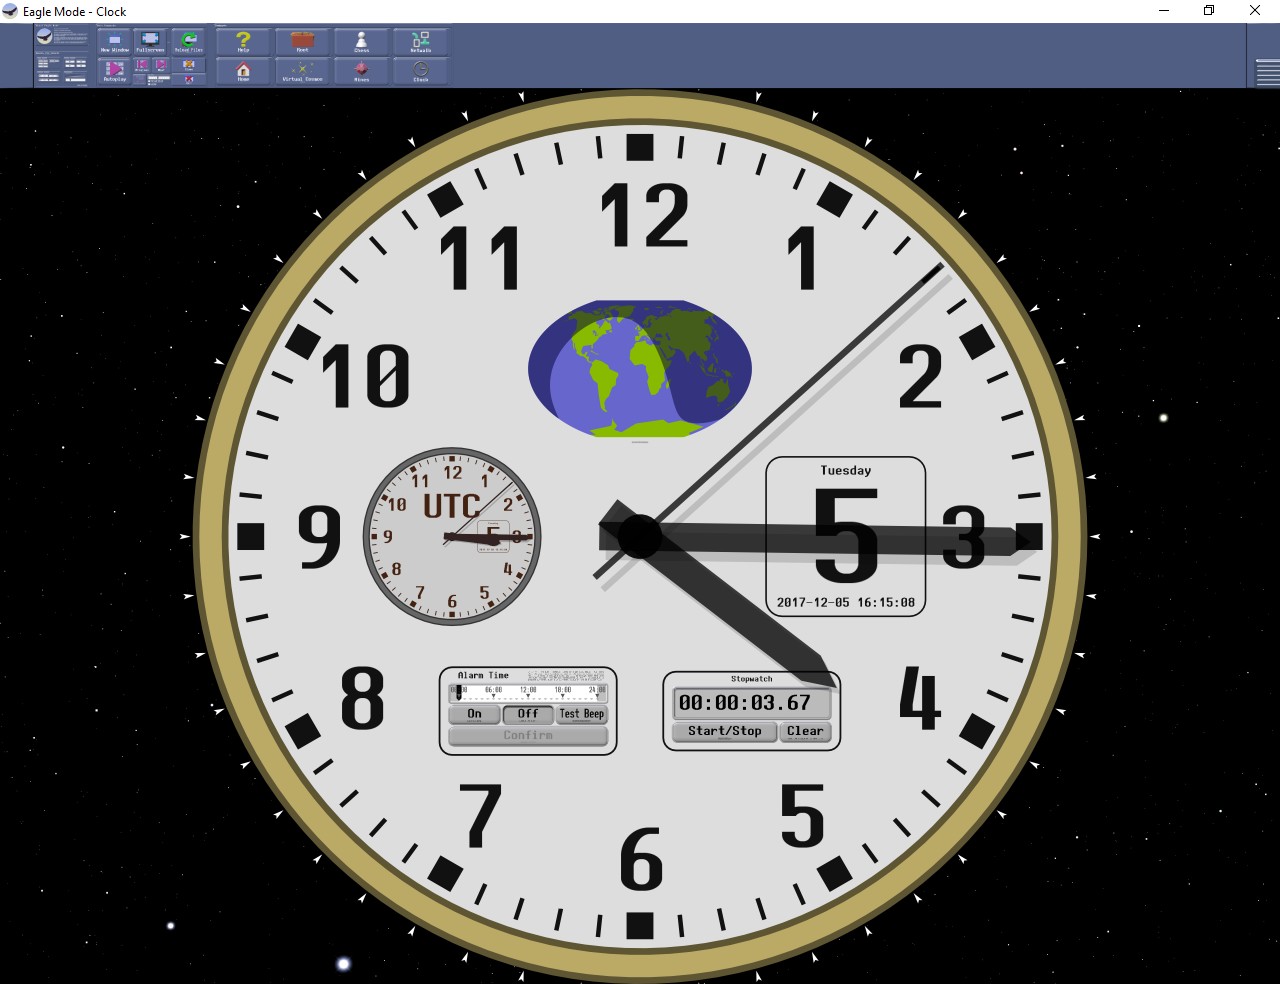 Figura 10: il bel quadrante dell'orologio di Eagle Mode